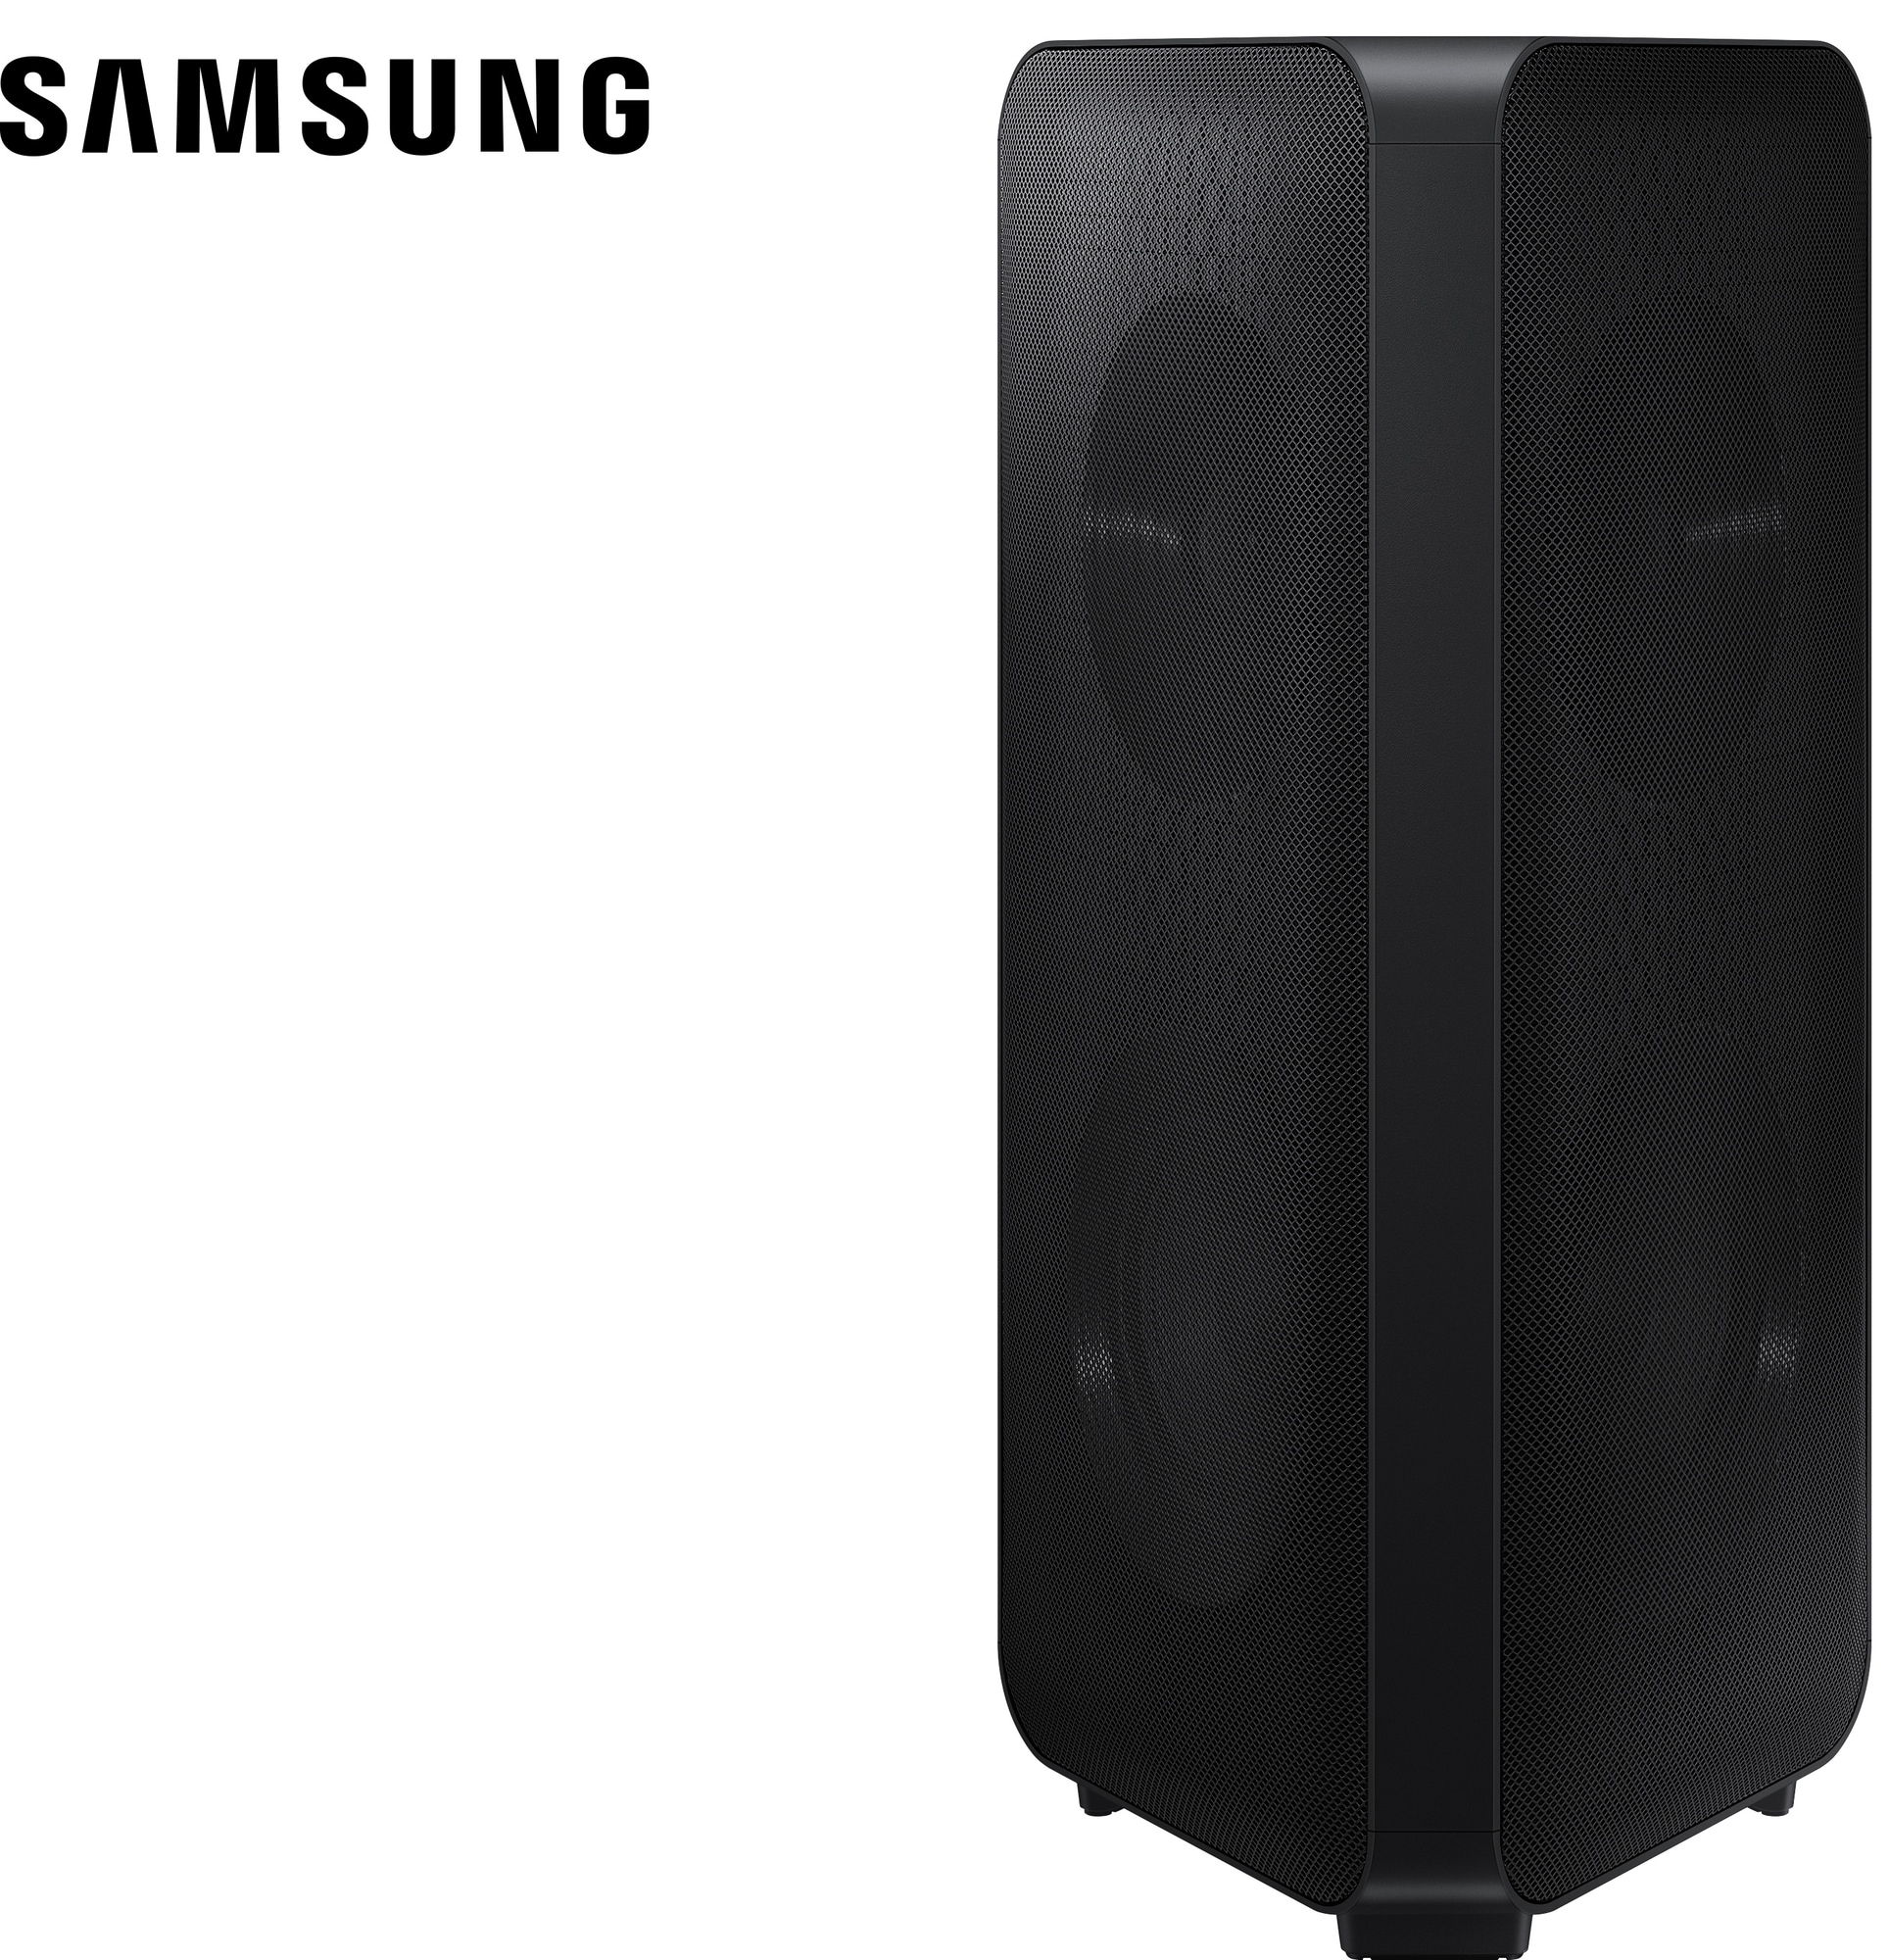 Samsung Sound Tower MXST50B bærbar høyttaler (sort) - Elkjøp